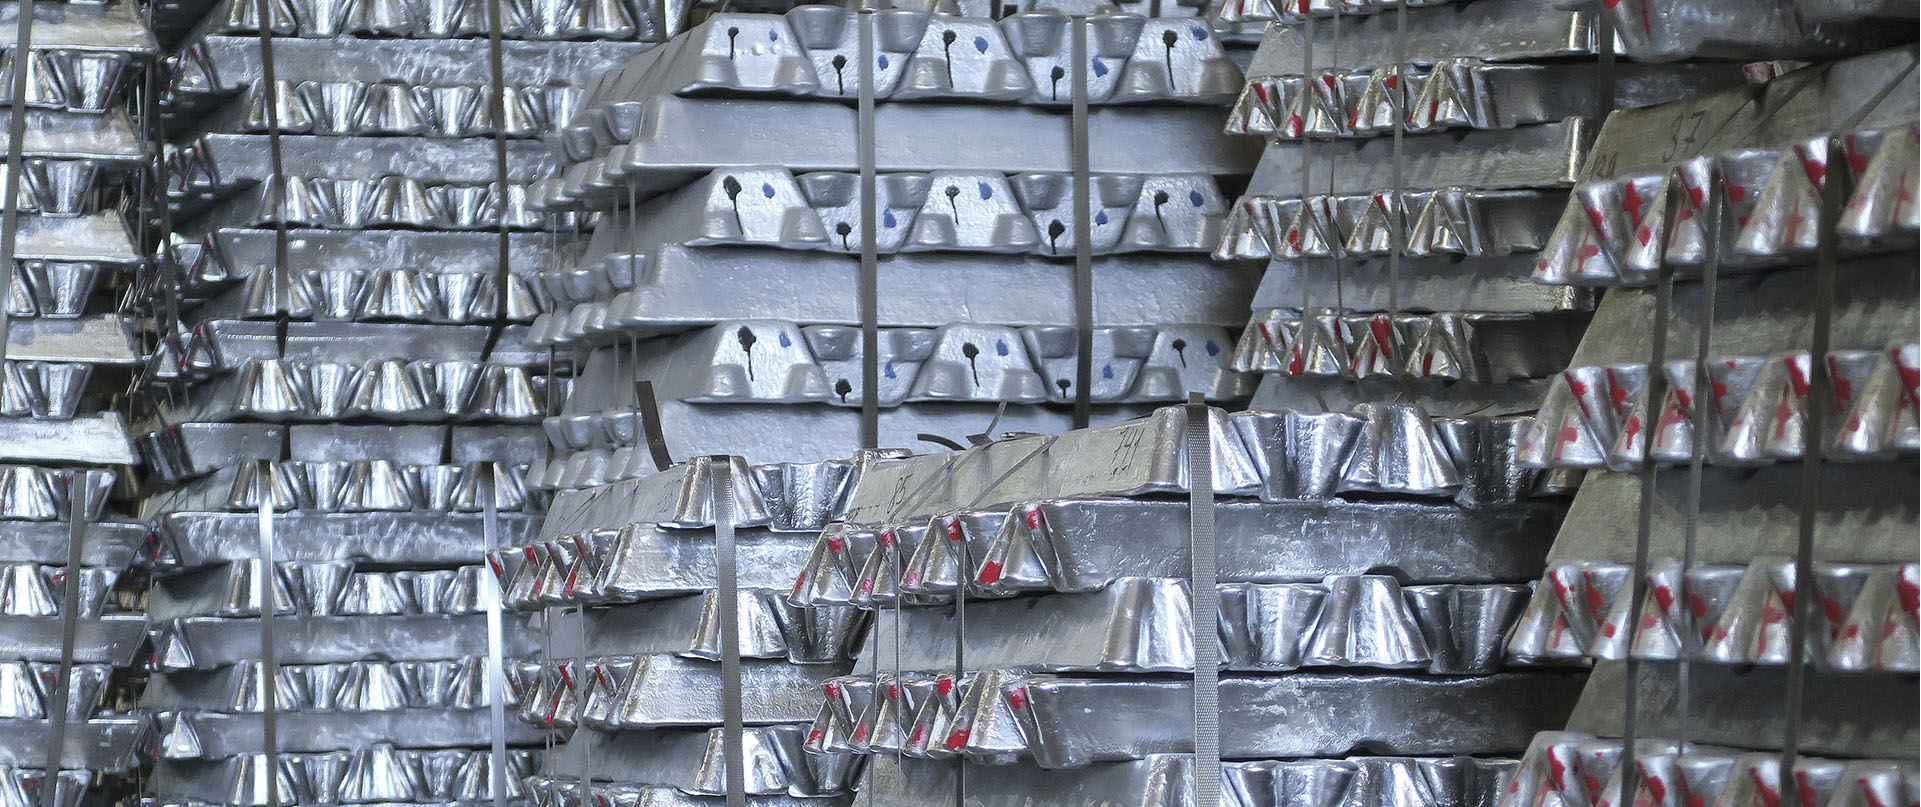 Широкая номенклатура<br />
выпускаемых алюминиевых сплавов